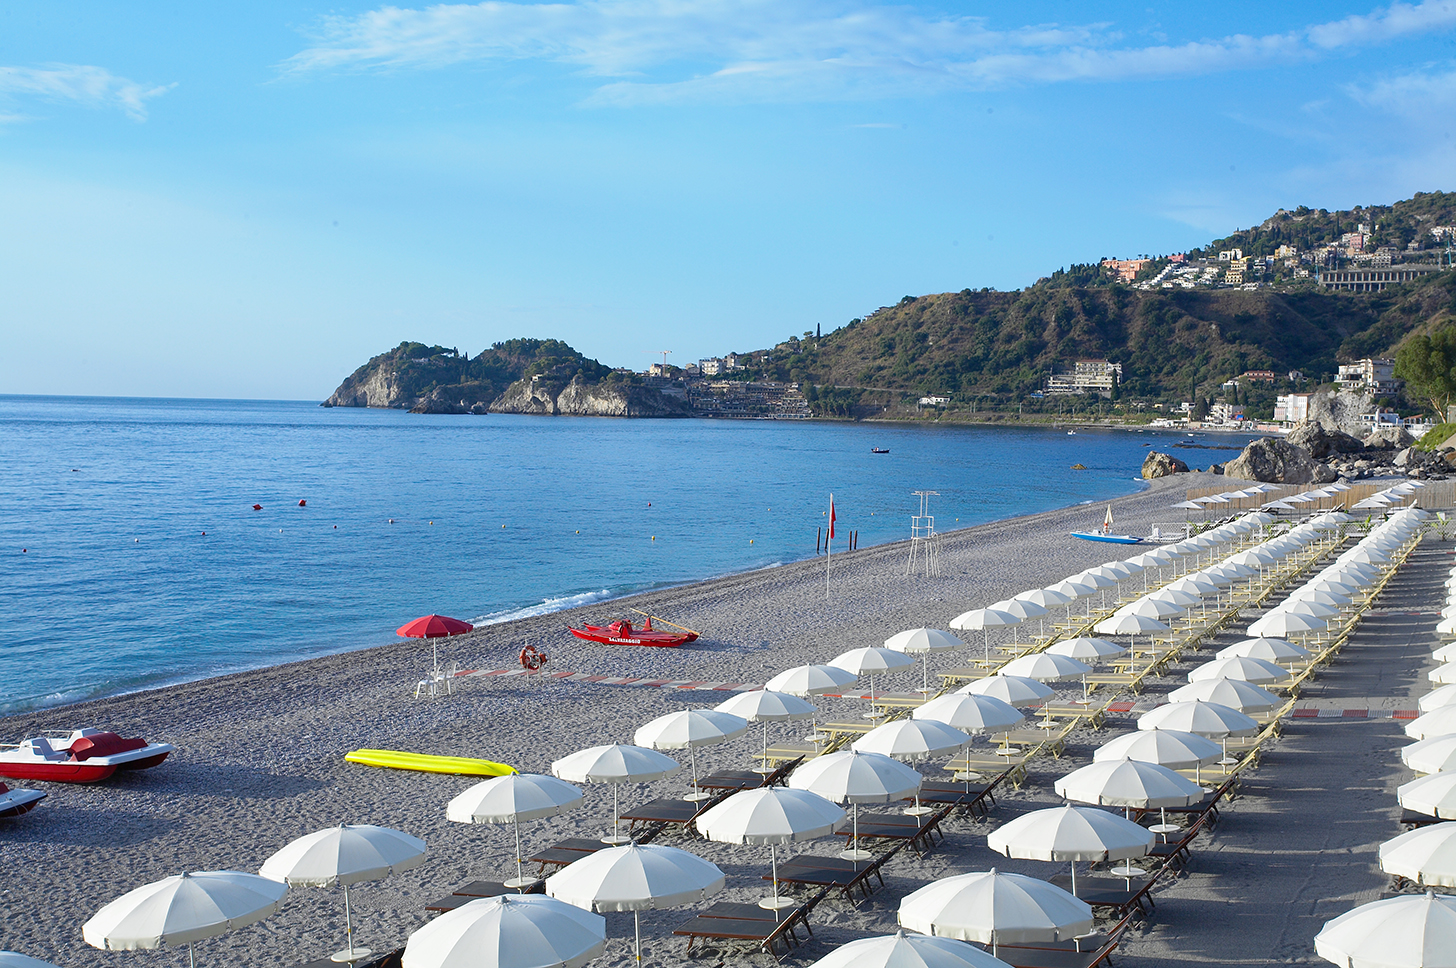 Spiaggia di Mazzeo'in fotoğrafı çok temiz temizlik seviyesi ile